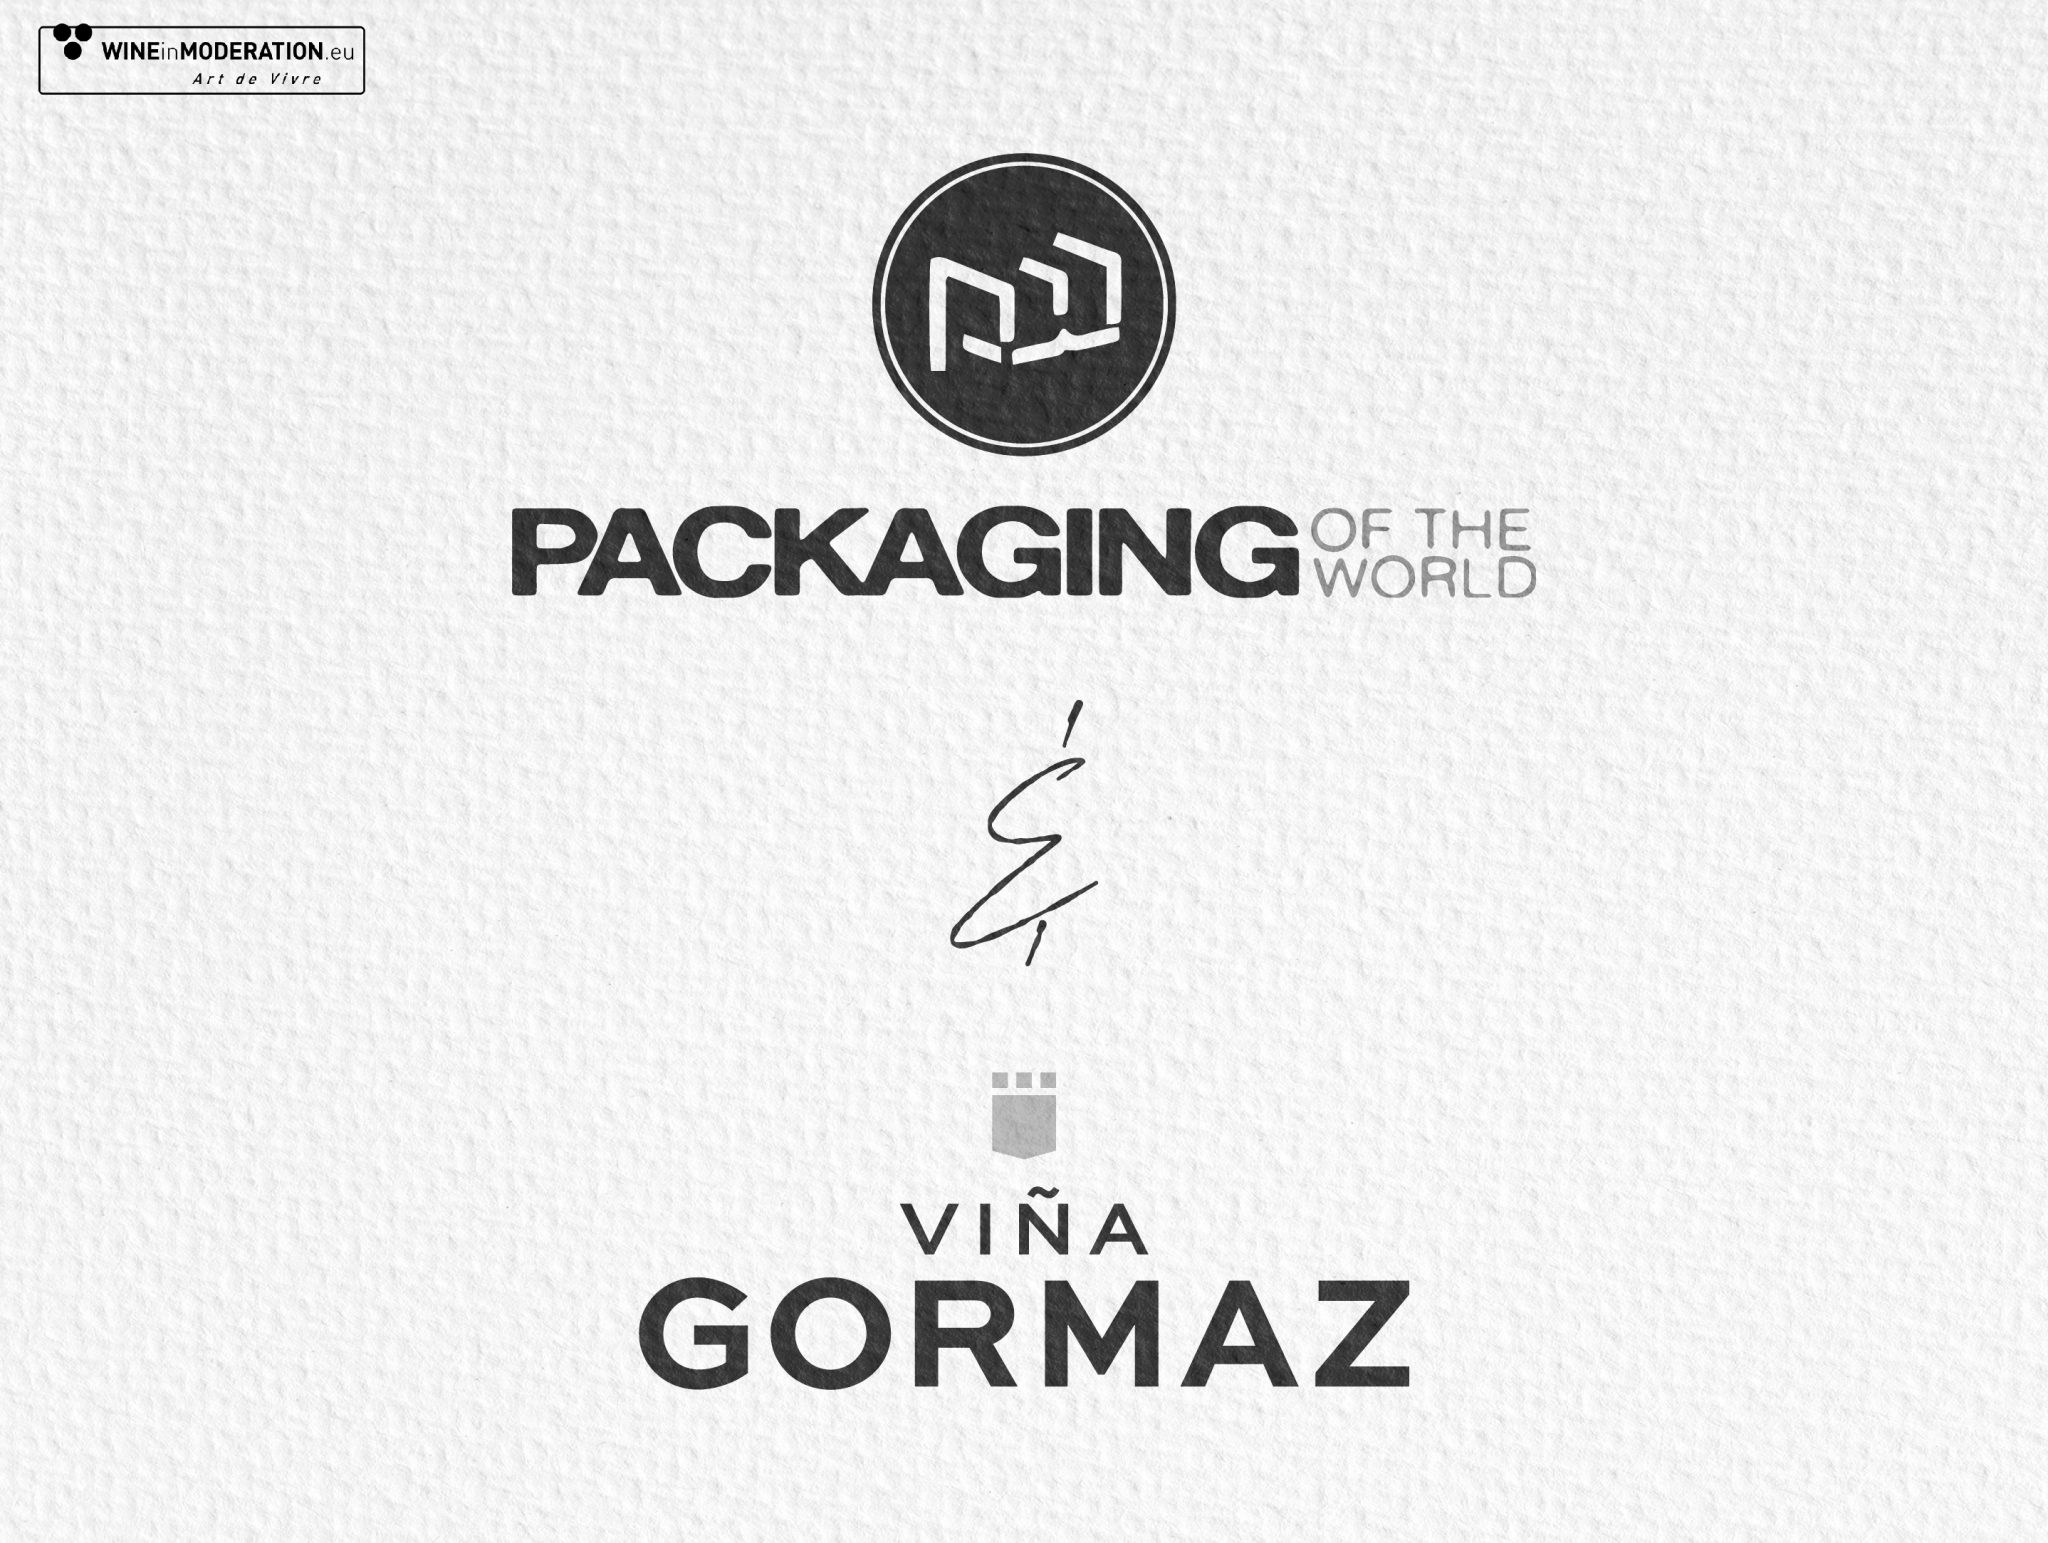 The new image of Viña Gormaz, a benchmark in international design